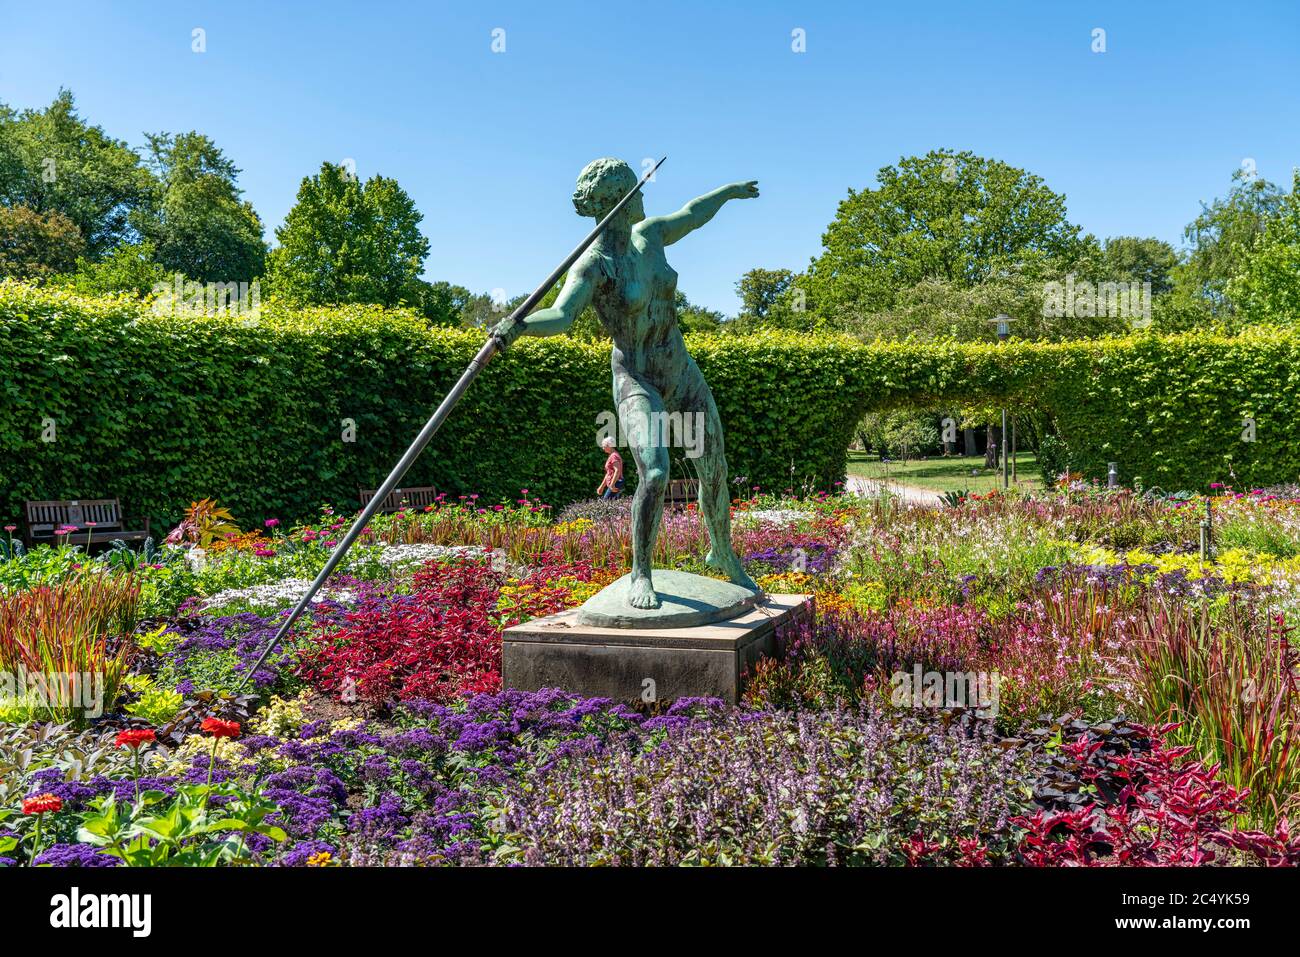 Der Grugapark, Essen, Botanischer Garten, Park für Freizeit und Erholung, Kunstwerk Javelin Werfer 1937, in Lindenrund, NRW, Deutschland Stockfoto